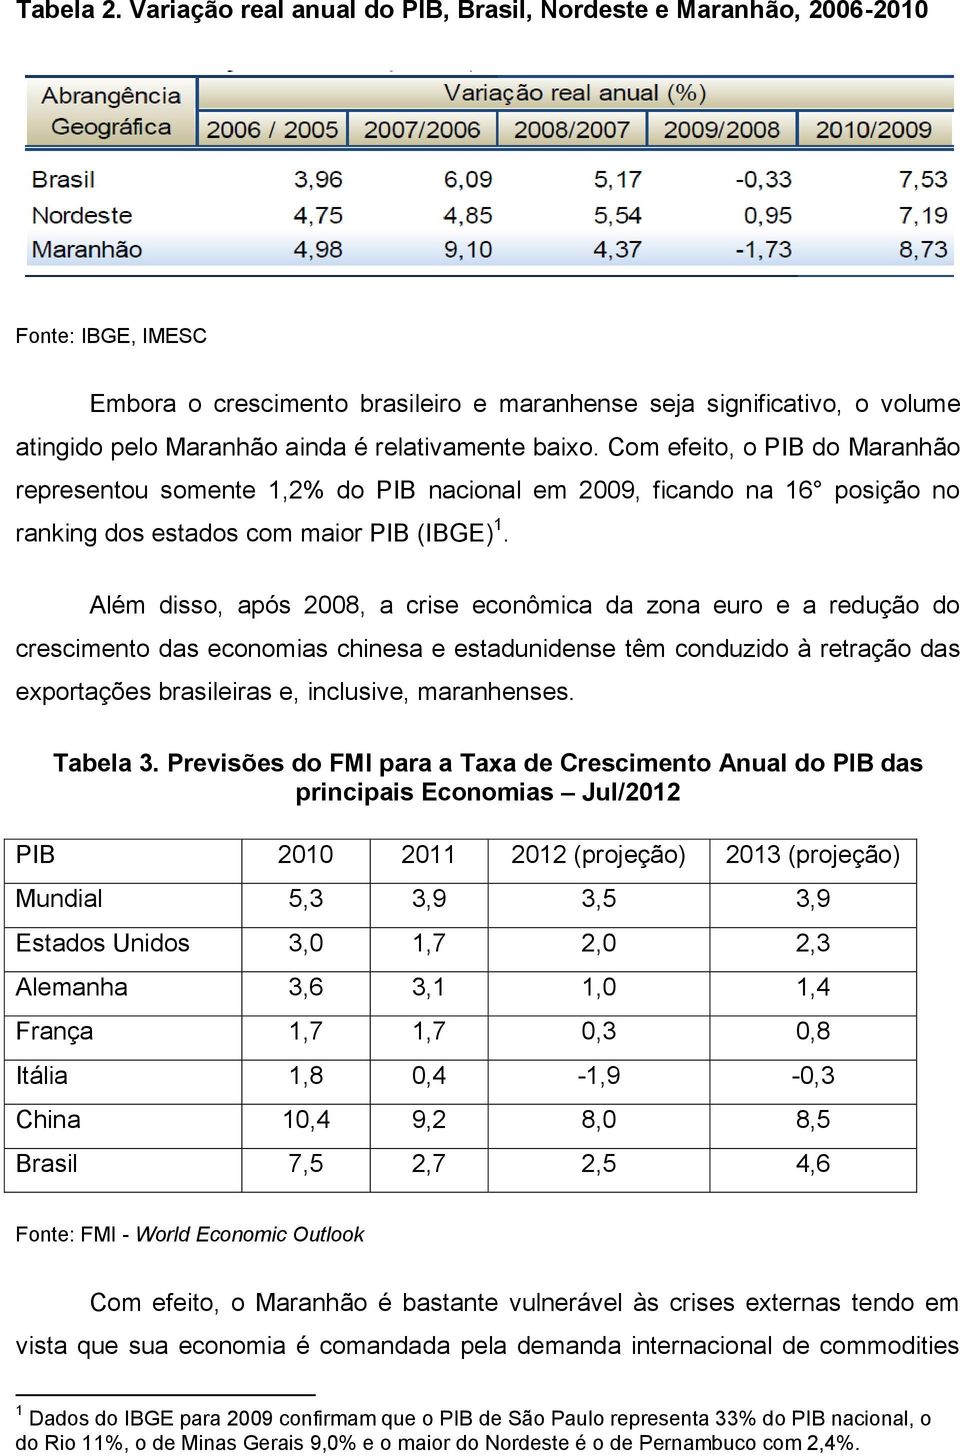 relativamente baixo. Com efeito, o PIB do Maranhão representou somente 1,2% do PIB nacional em 2009, ficando na 16 posição no ranking dos estados com maior PIB (IBGE) 1.